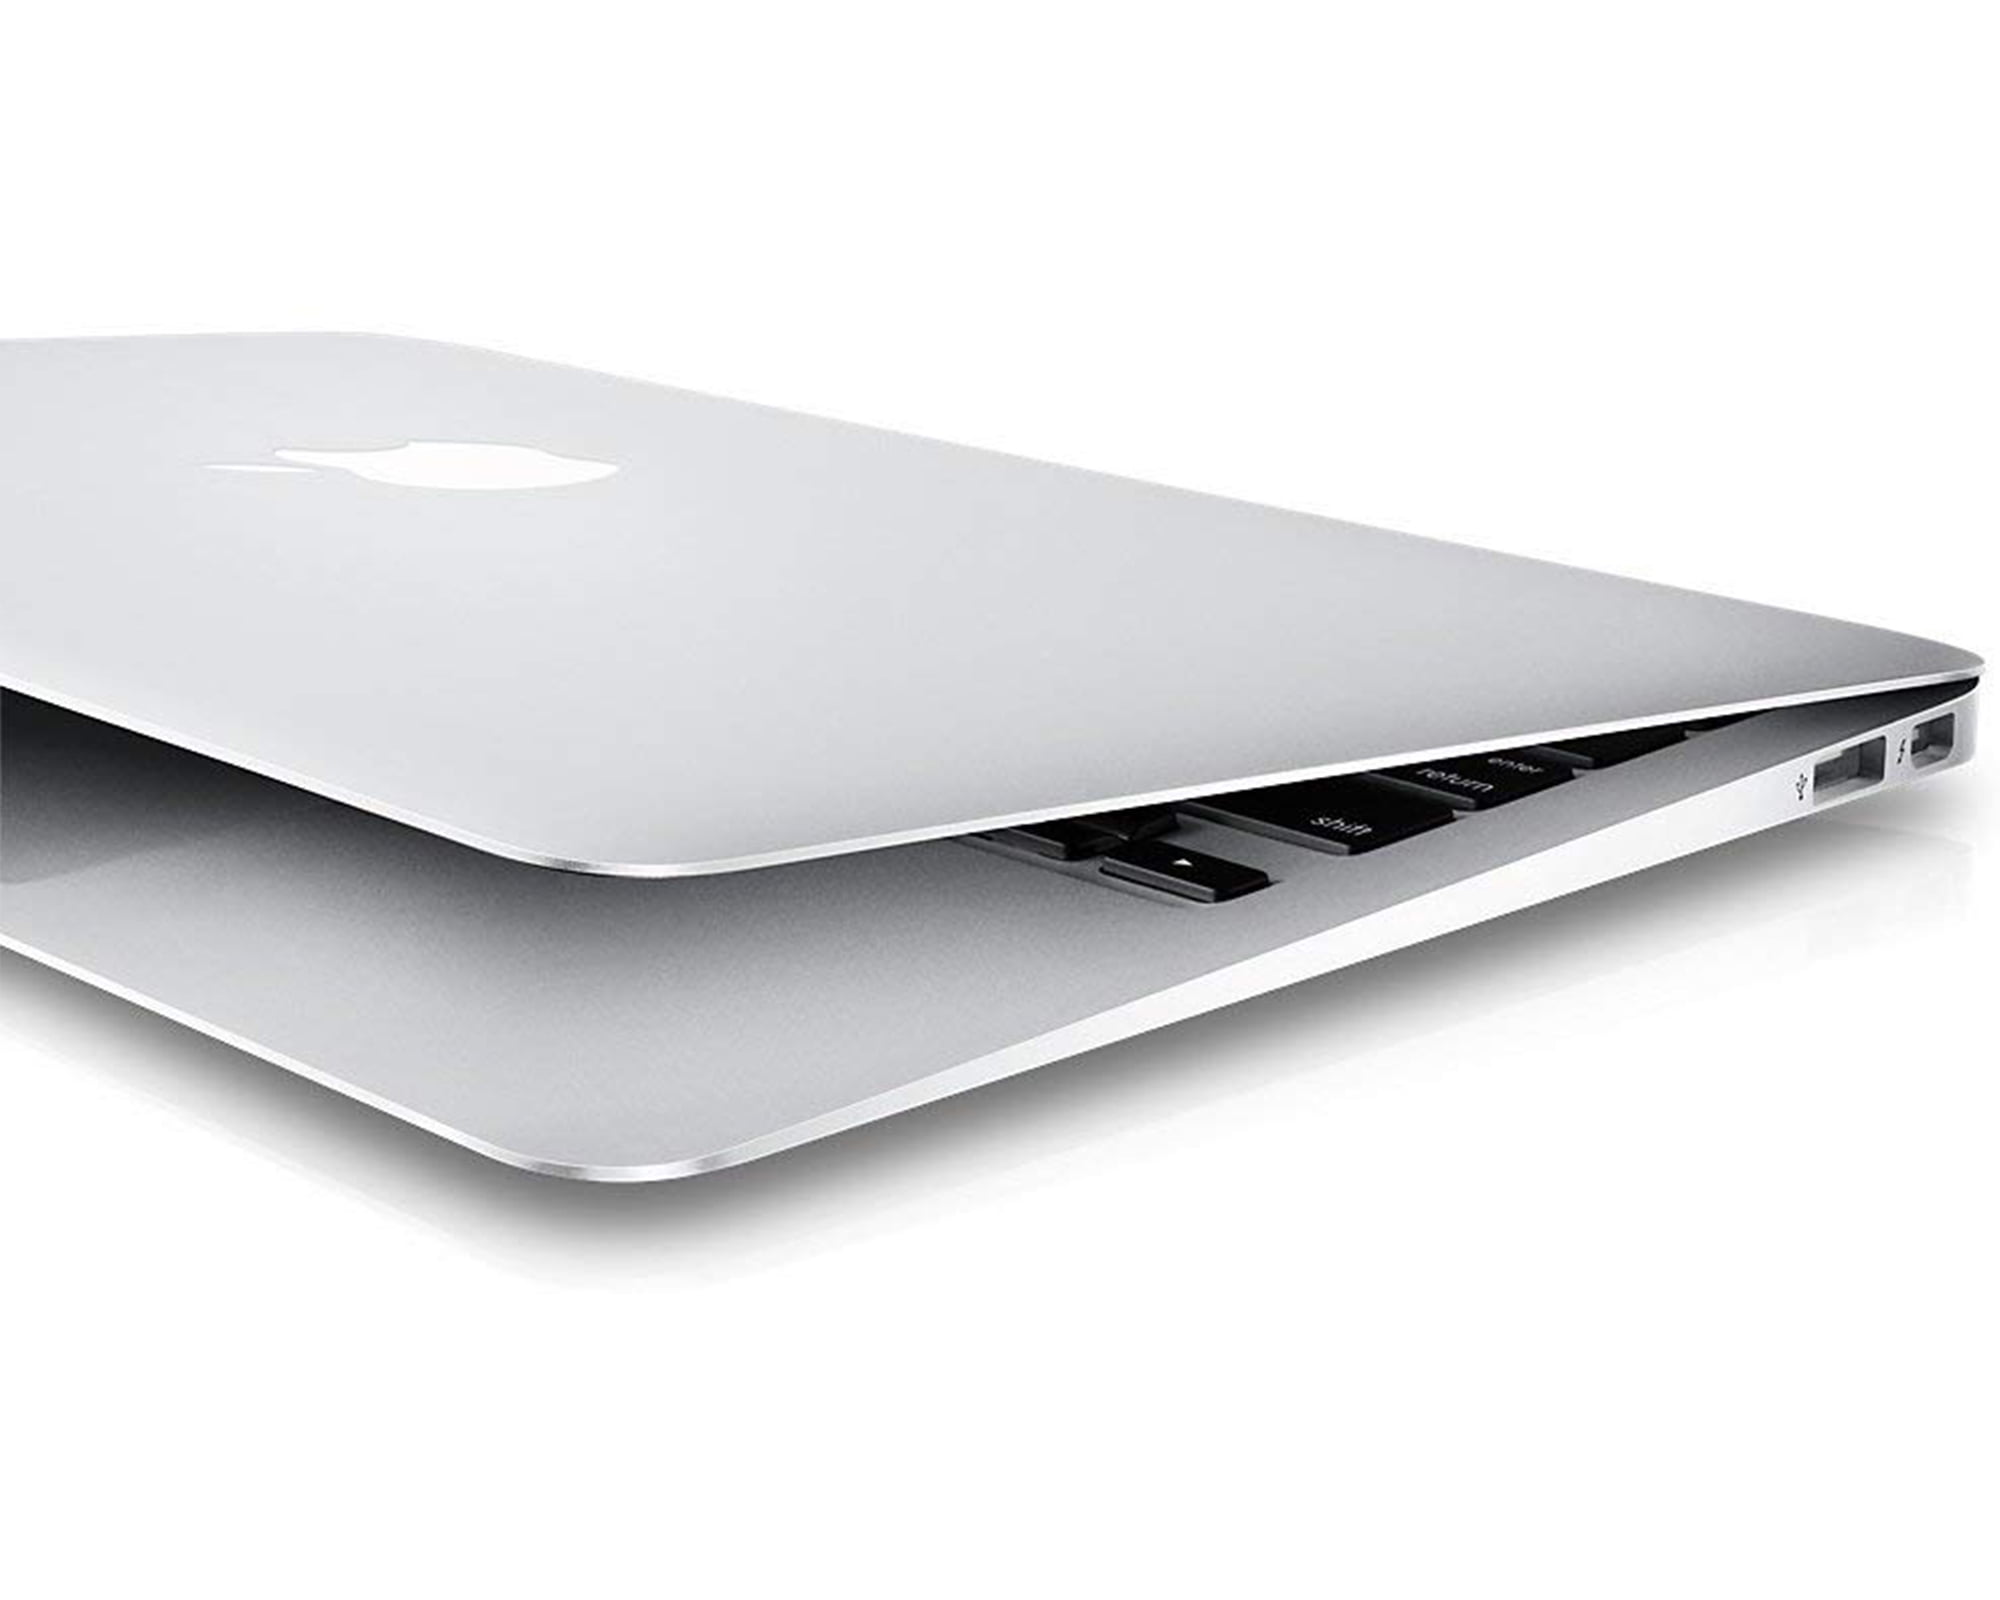 Restored Apple MacBook Air 11.6-inch Intel Core i5 4GB RAM 